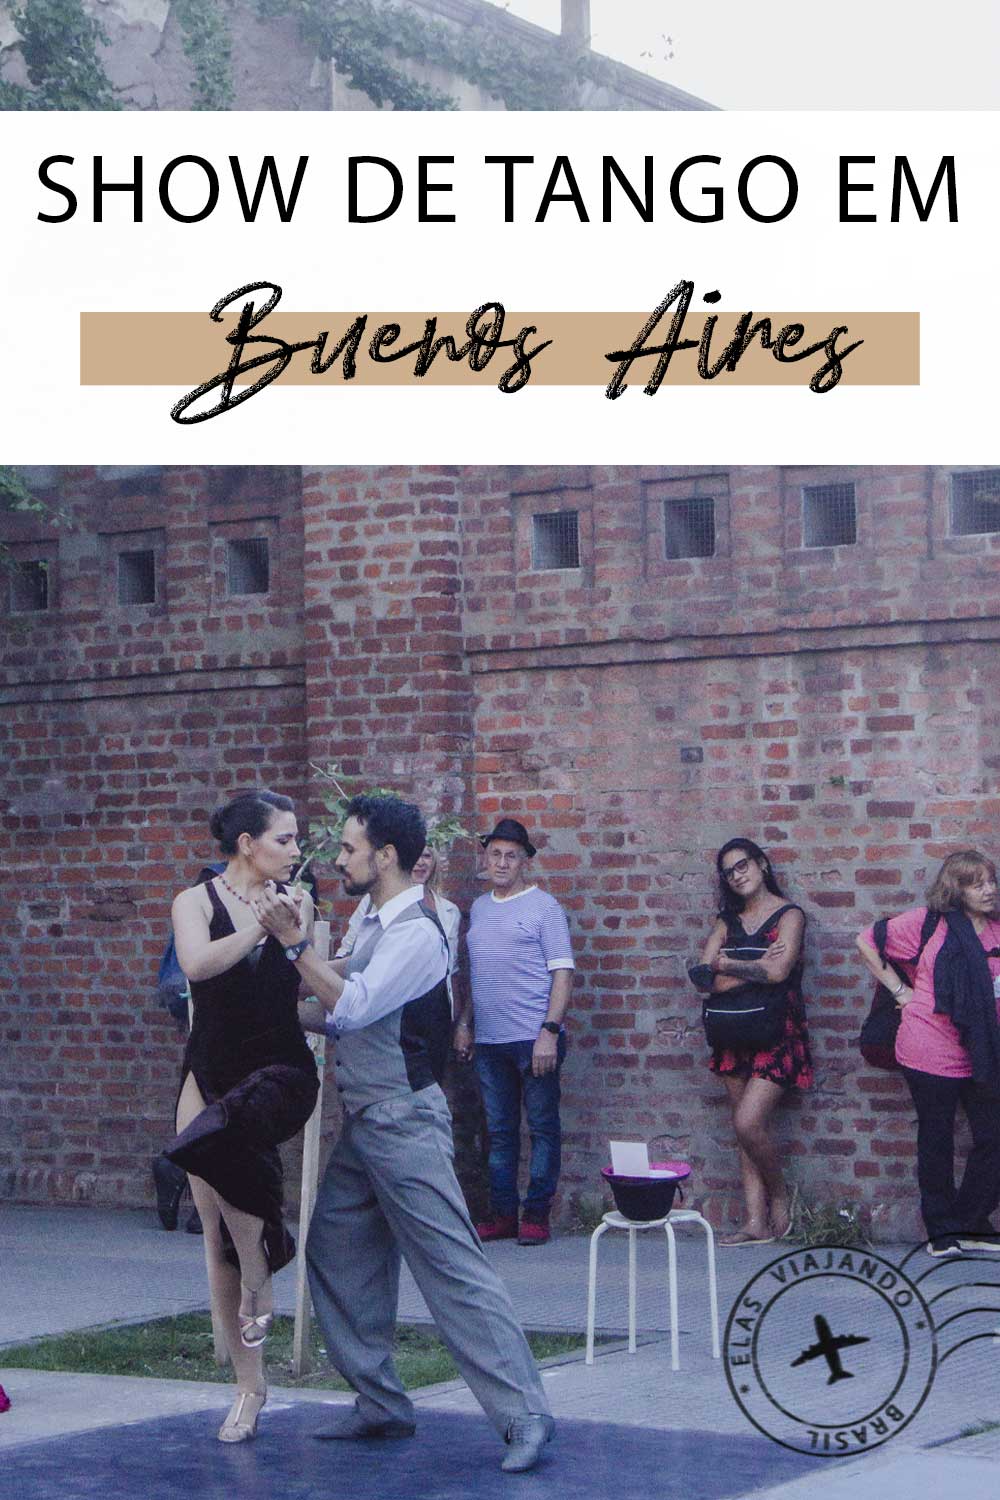 Show de Tango em Buenos Aires, Argentina